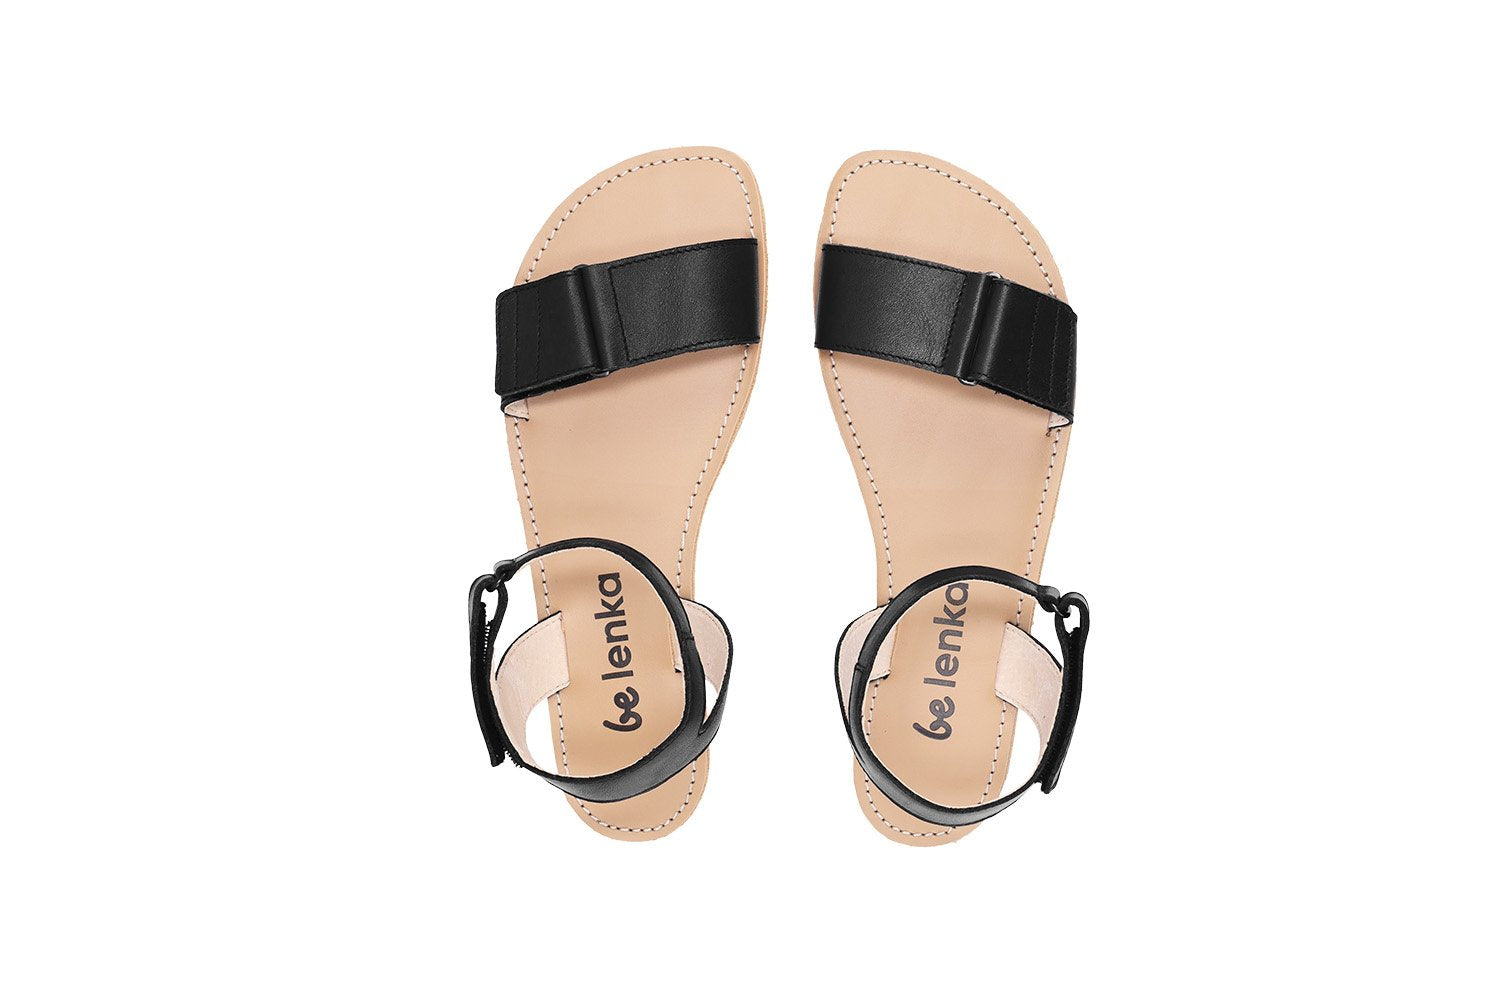 Be Lenka Iris barfods sandaler til kvinder i farven black, top